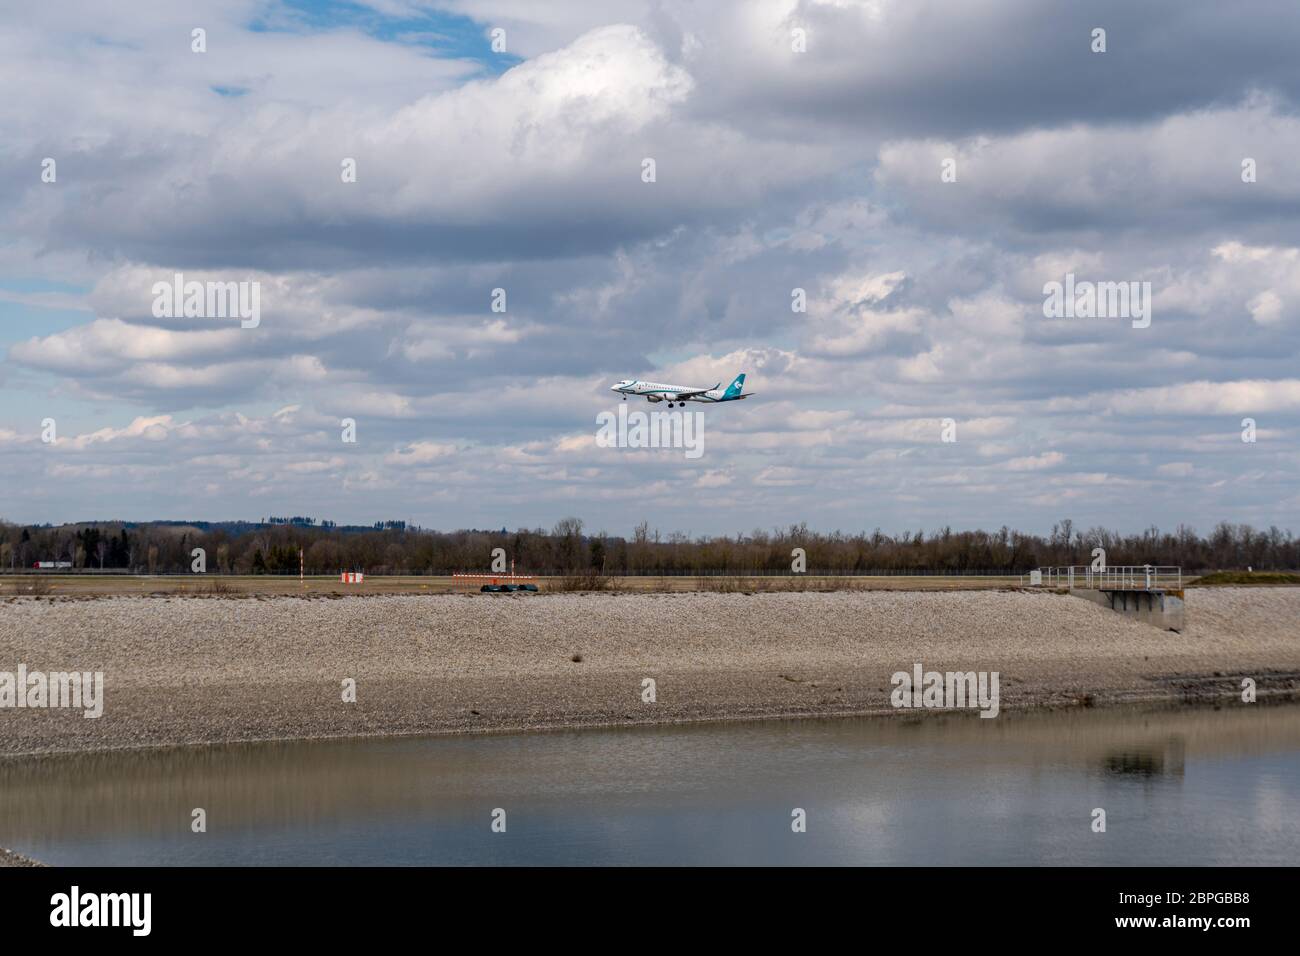 München, Deutschland - 03 29 2018: Flugzeug der Air Dolomiti Airline landet auf dem Flughafen München mit wolkenbedeckter Luft Stockfoto